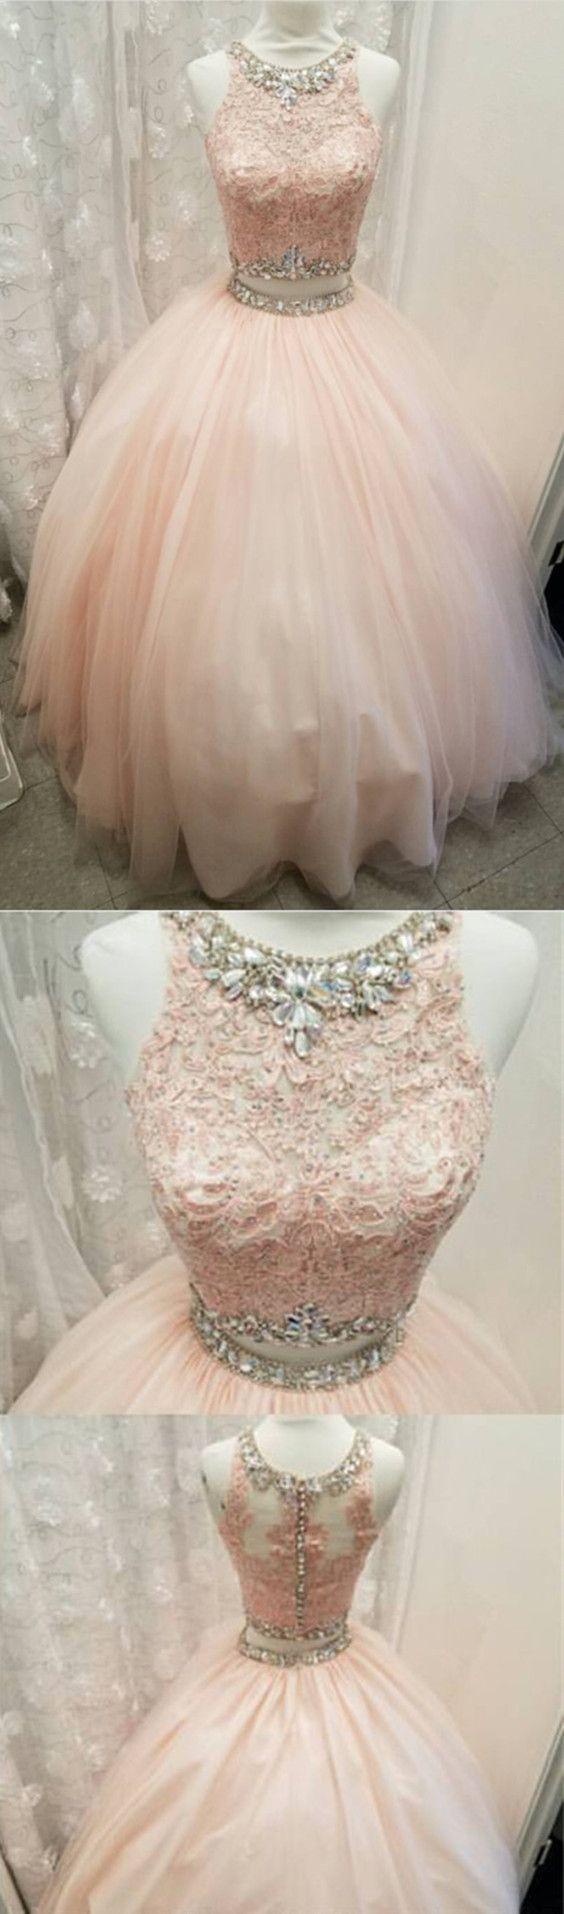 Wedding - Crop Top Dress